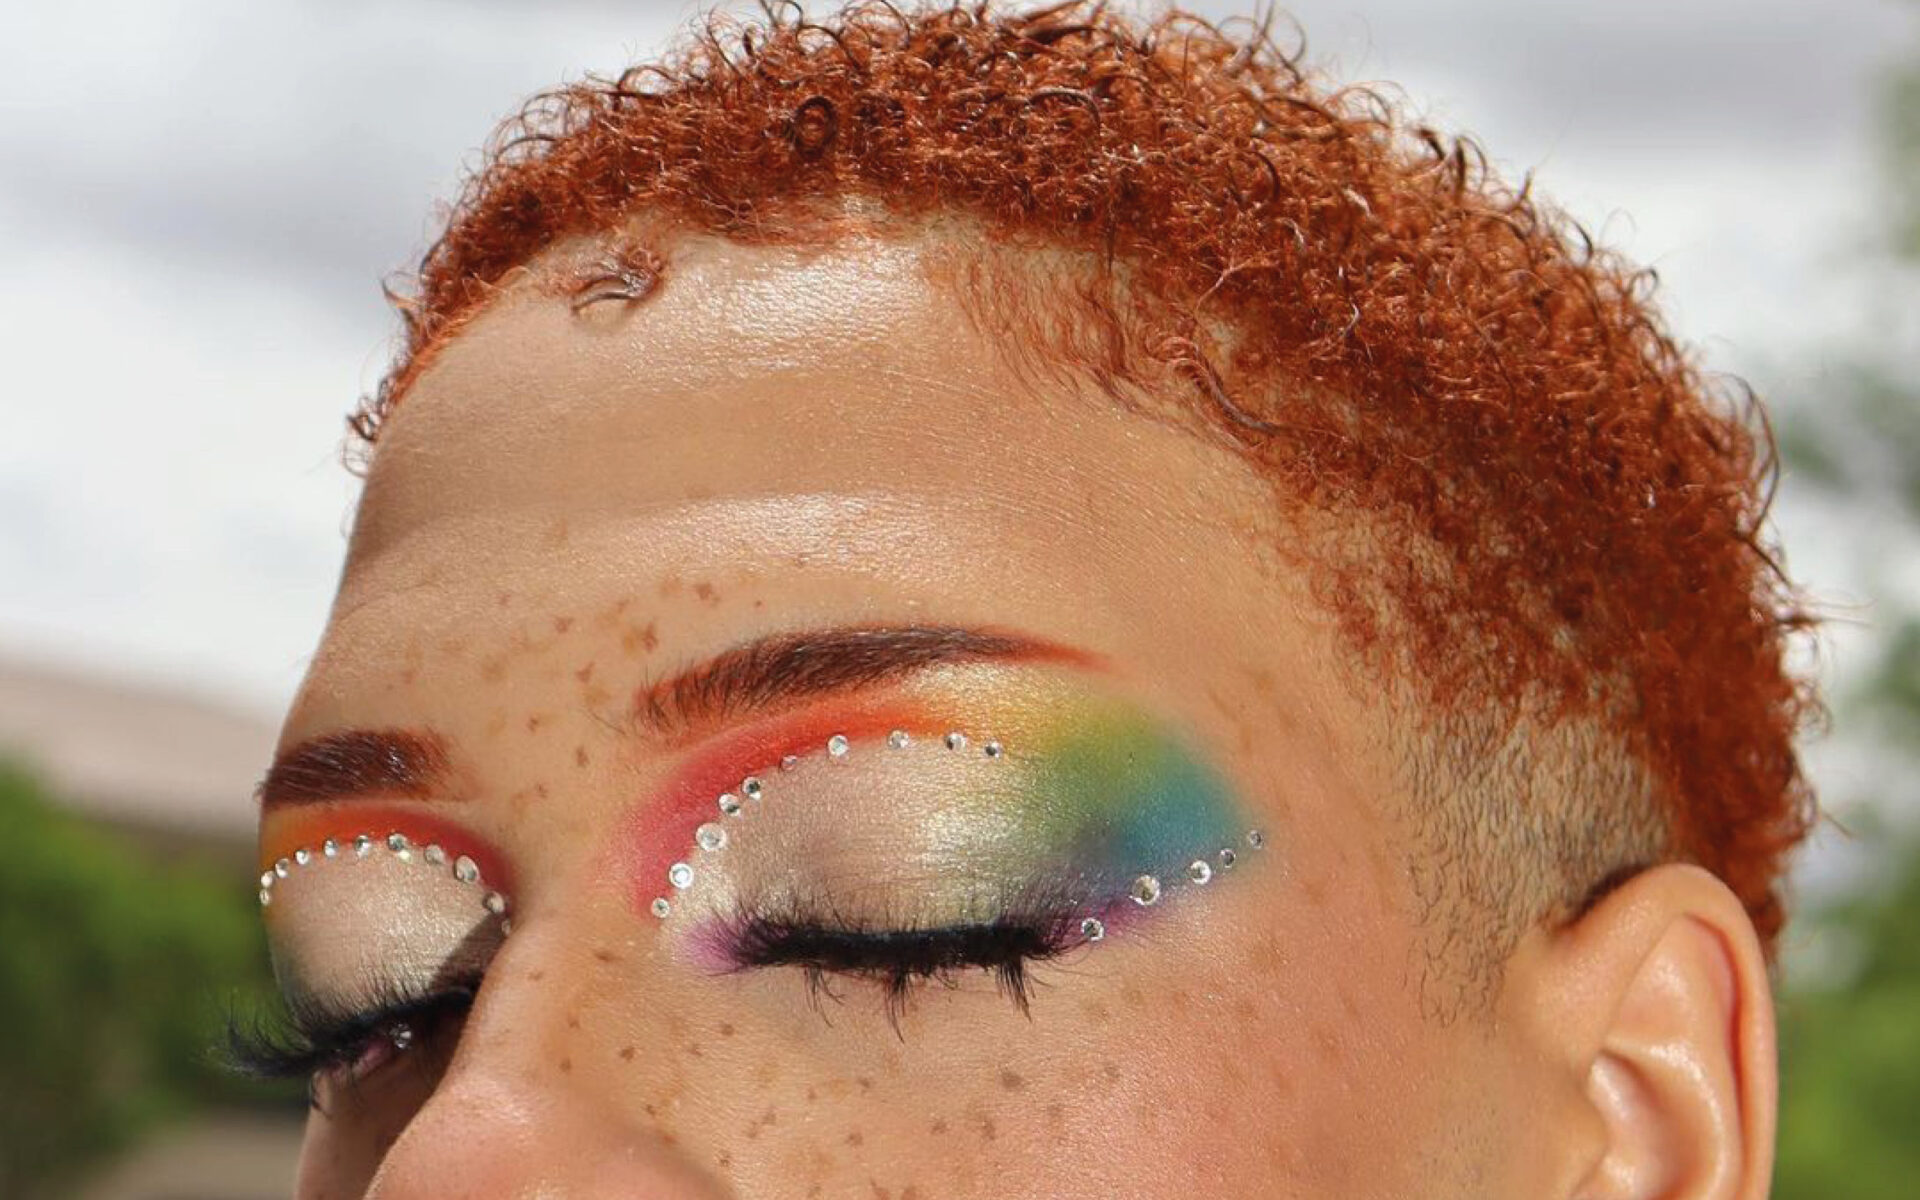 Idée de make up rainbow pour la pride